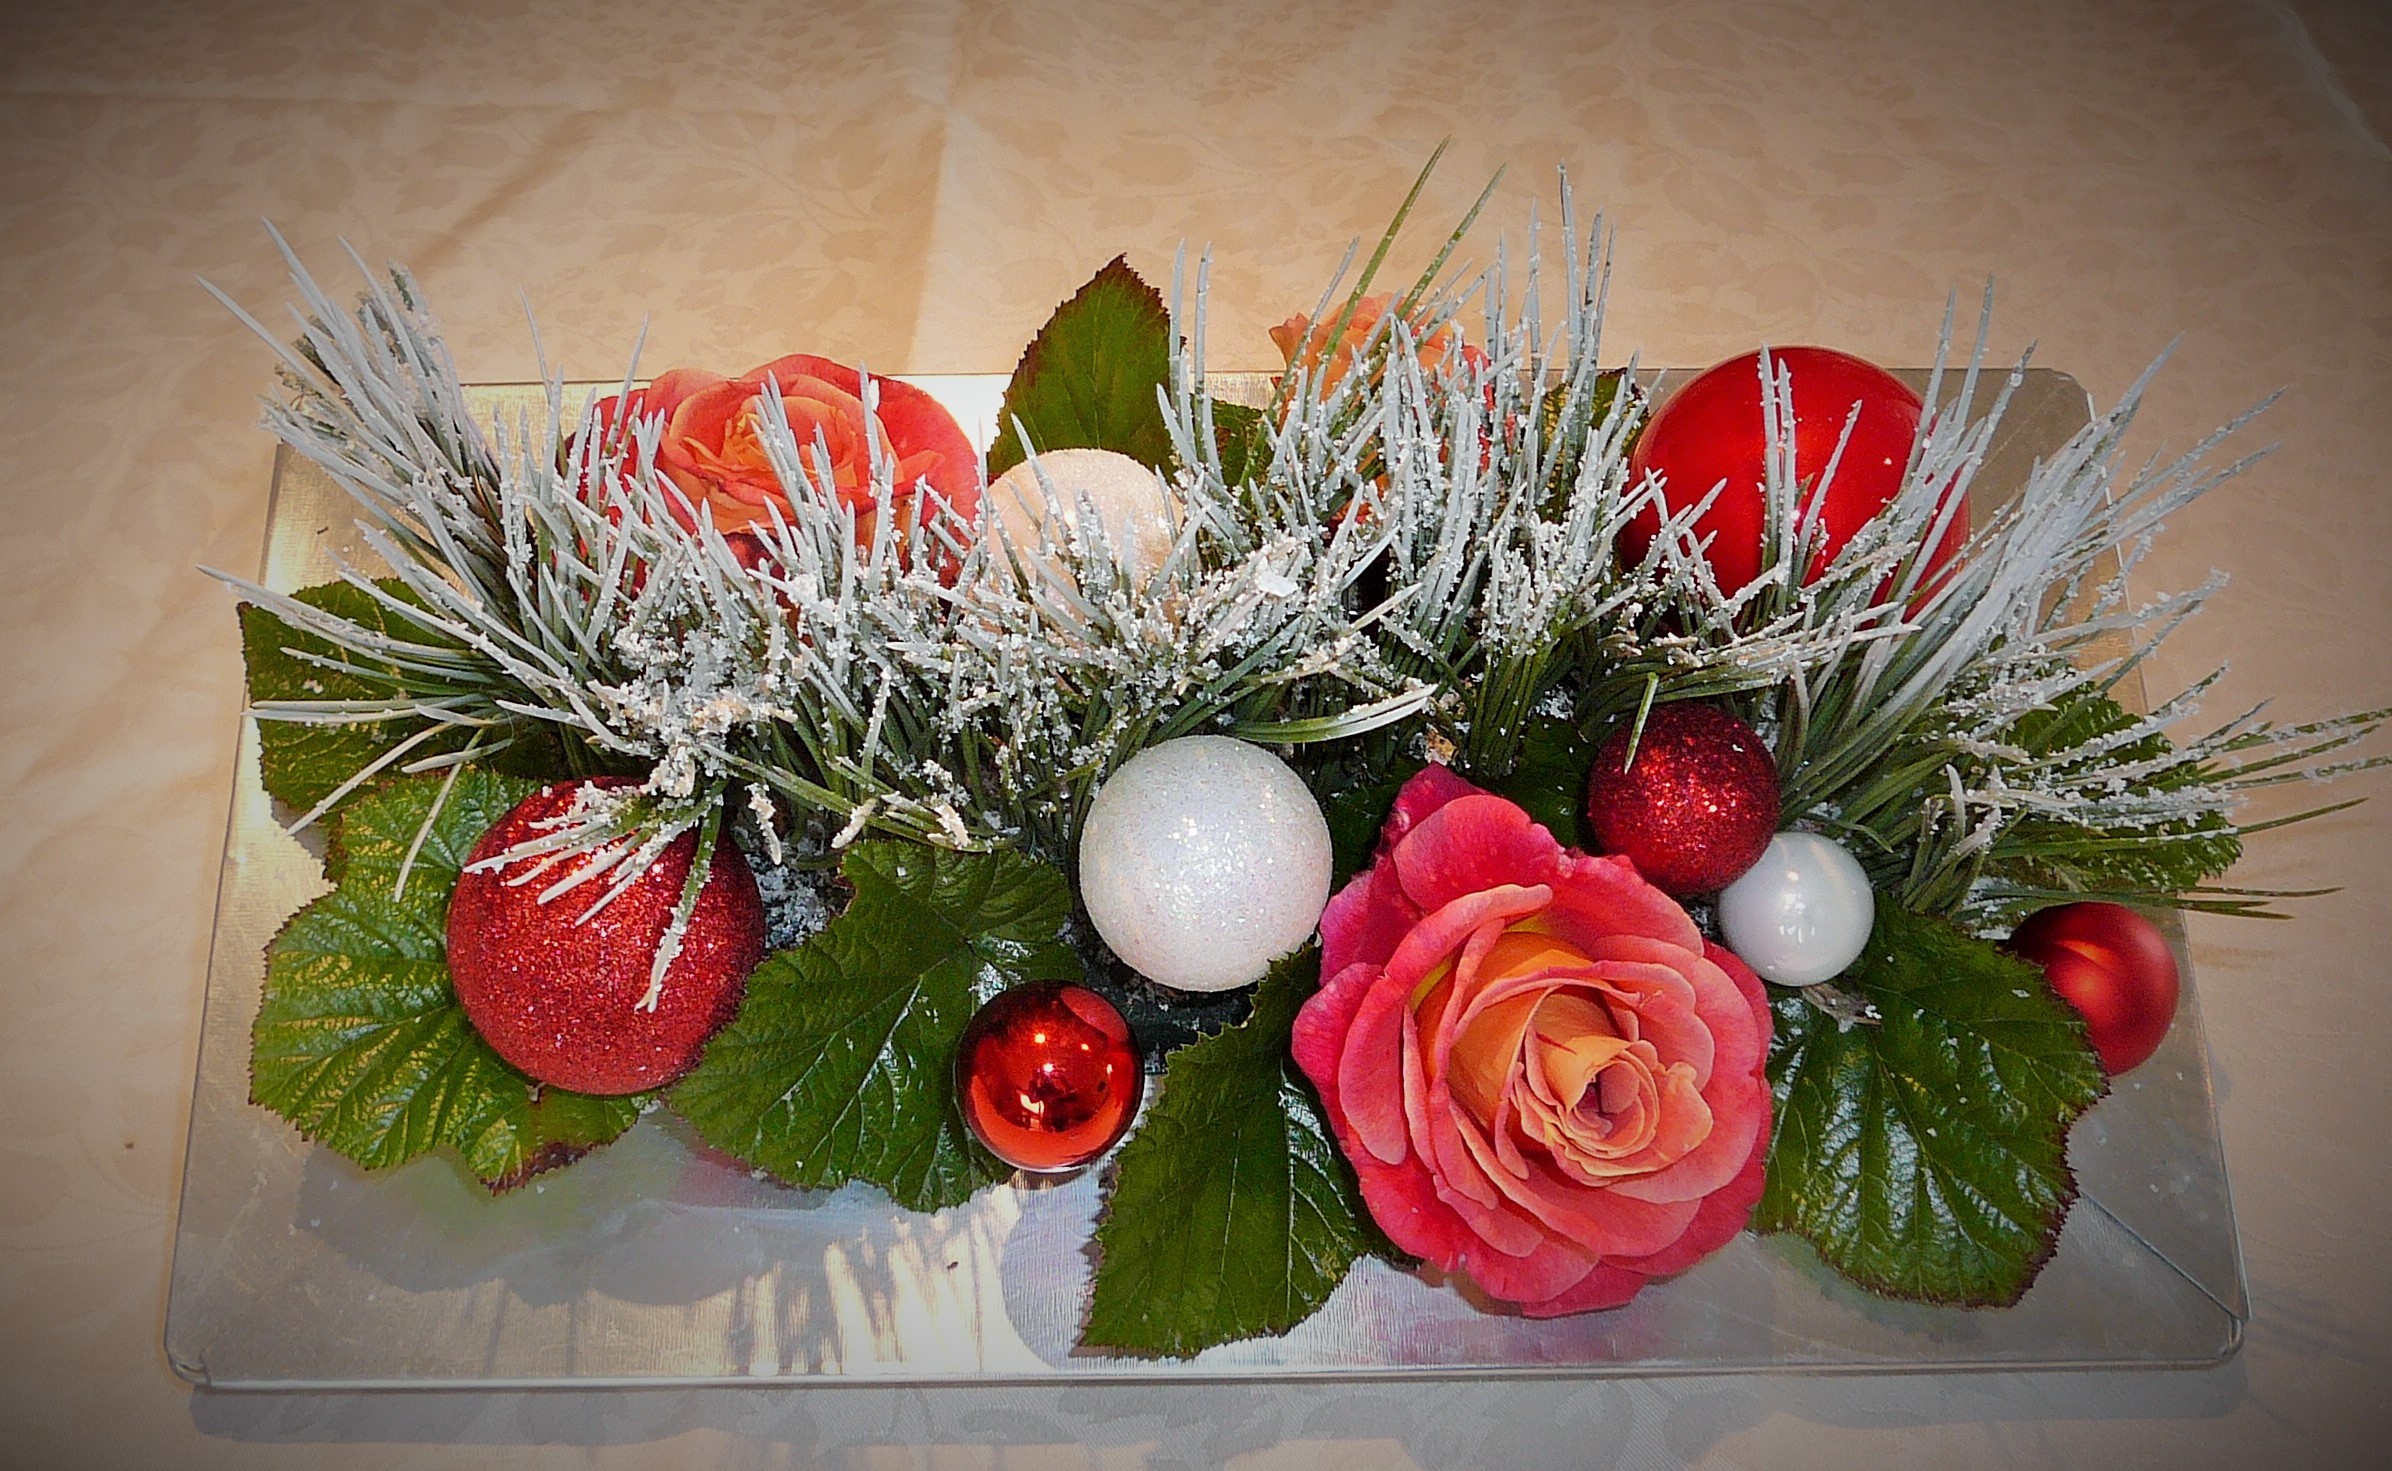 L’art floral pour décorer la période de Noël, démonstration.